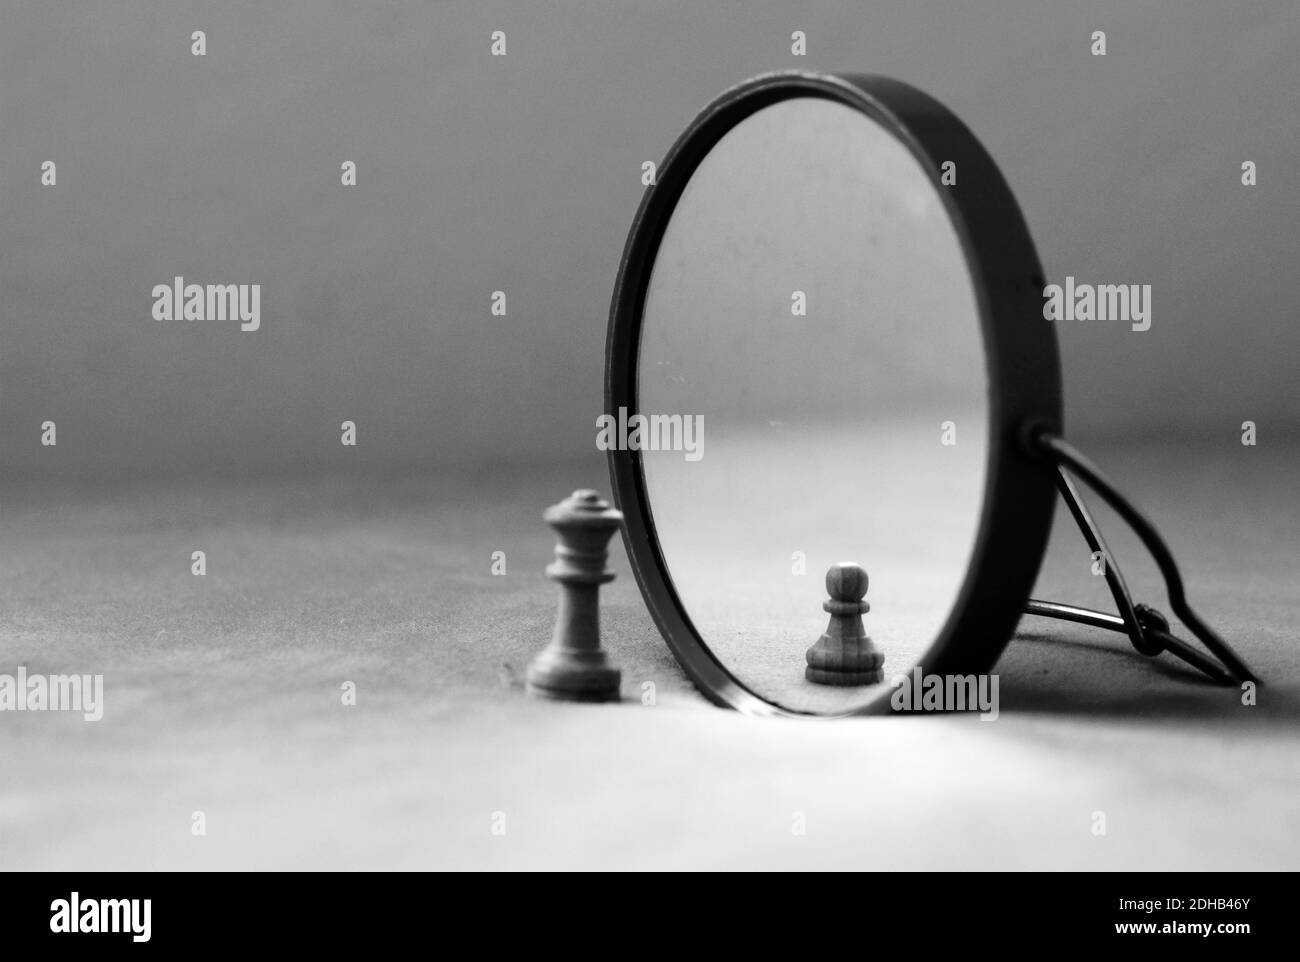 image de miroir et perception de soi, sensation petite et solitaire Banque D'Images